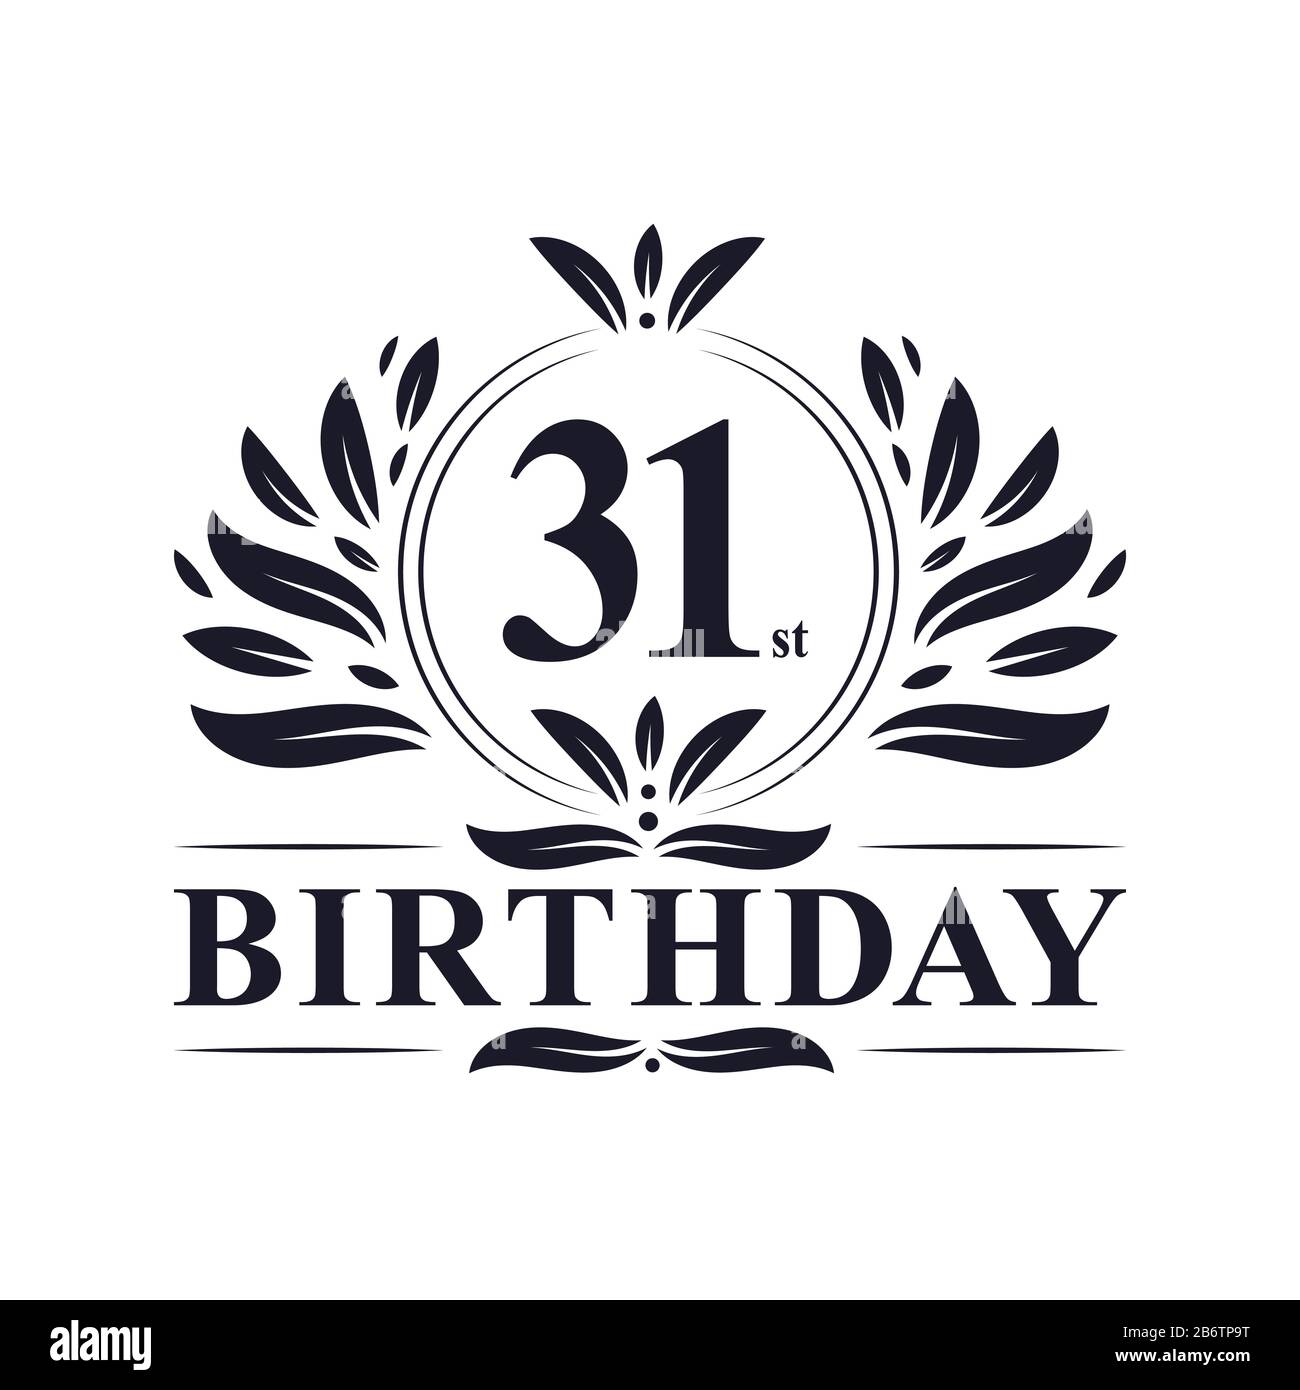 Logotipo de 40 cumpleaños fotografías e imágenes de alta resolución - Alamy